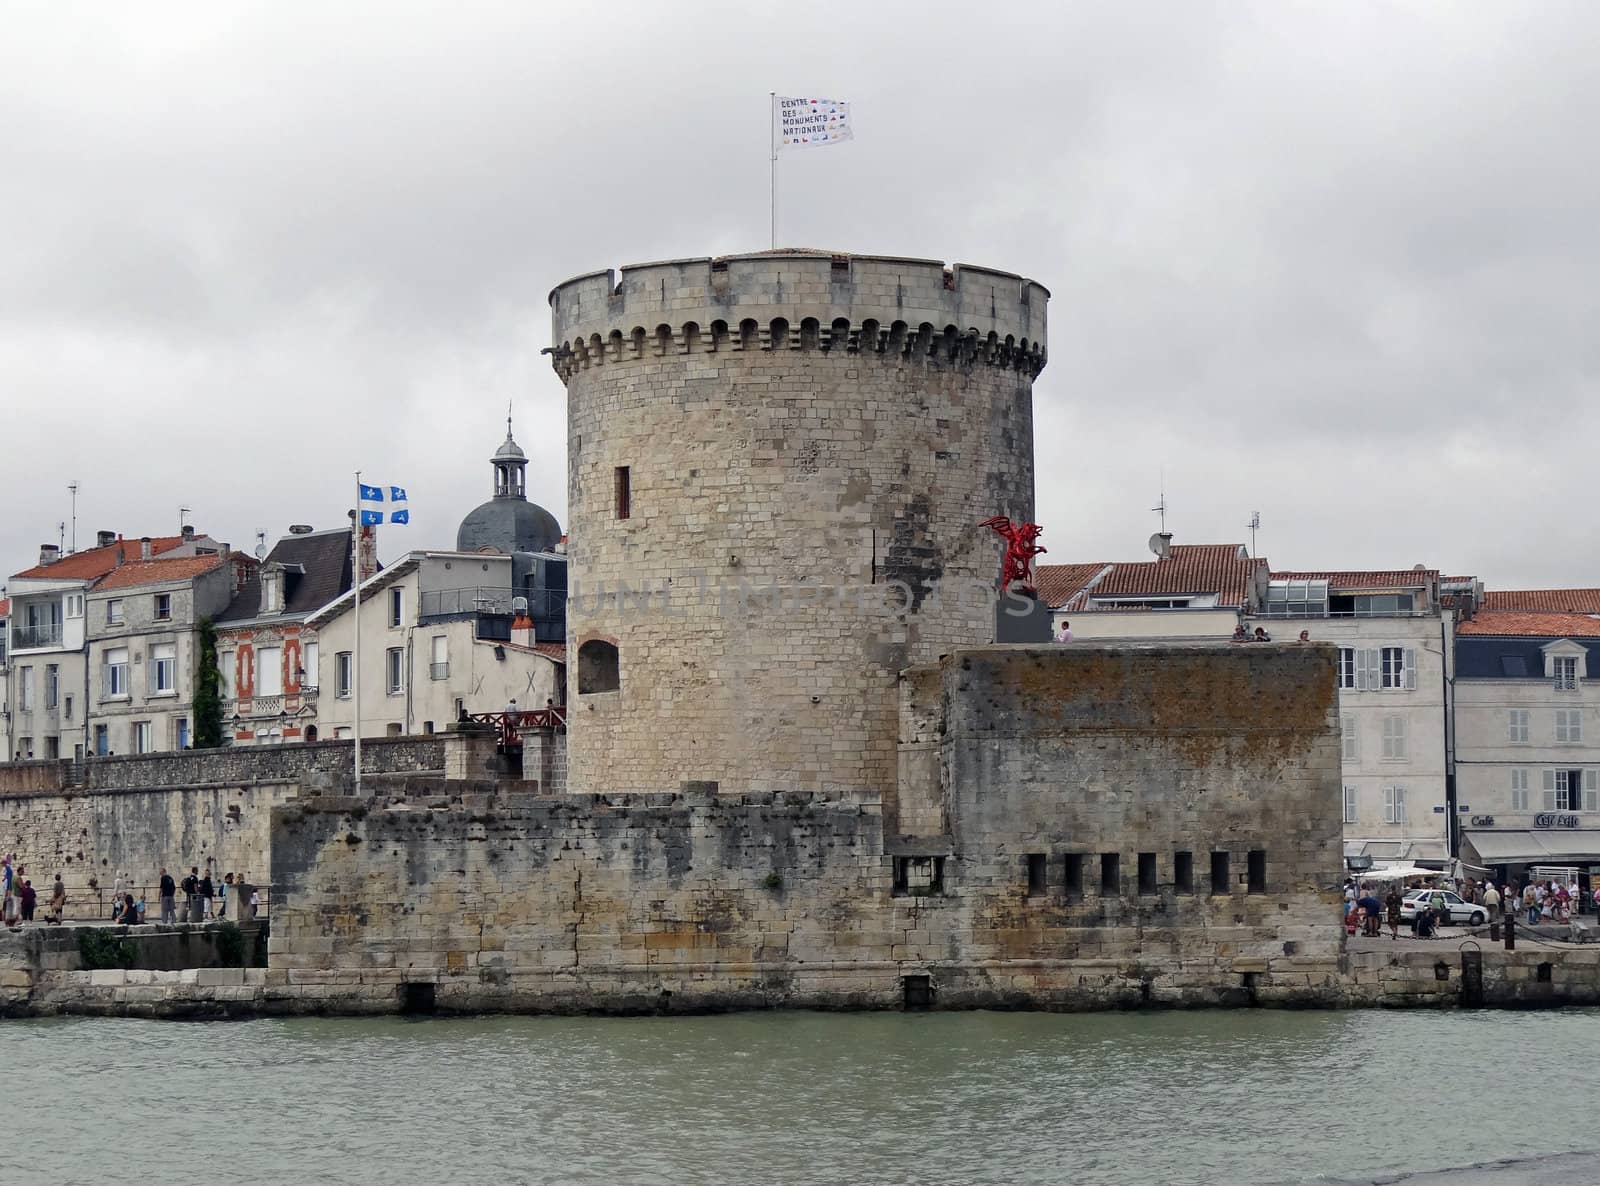 Chain tower in La Rochelle, France